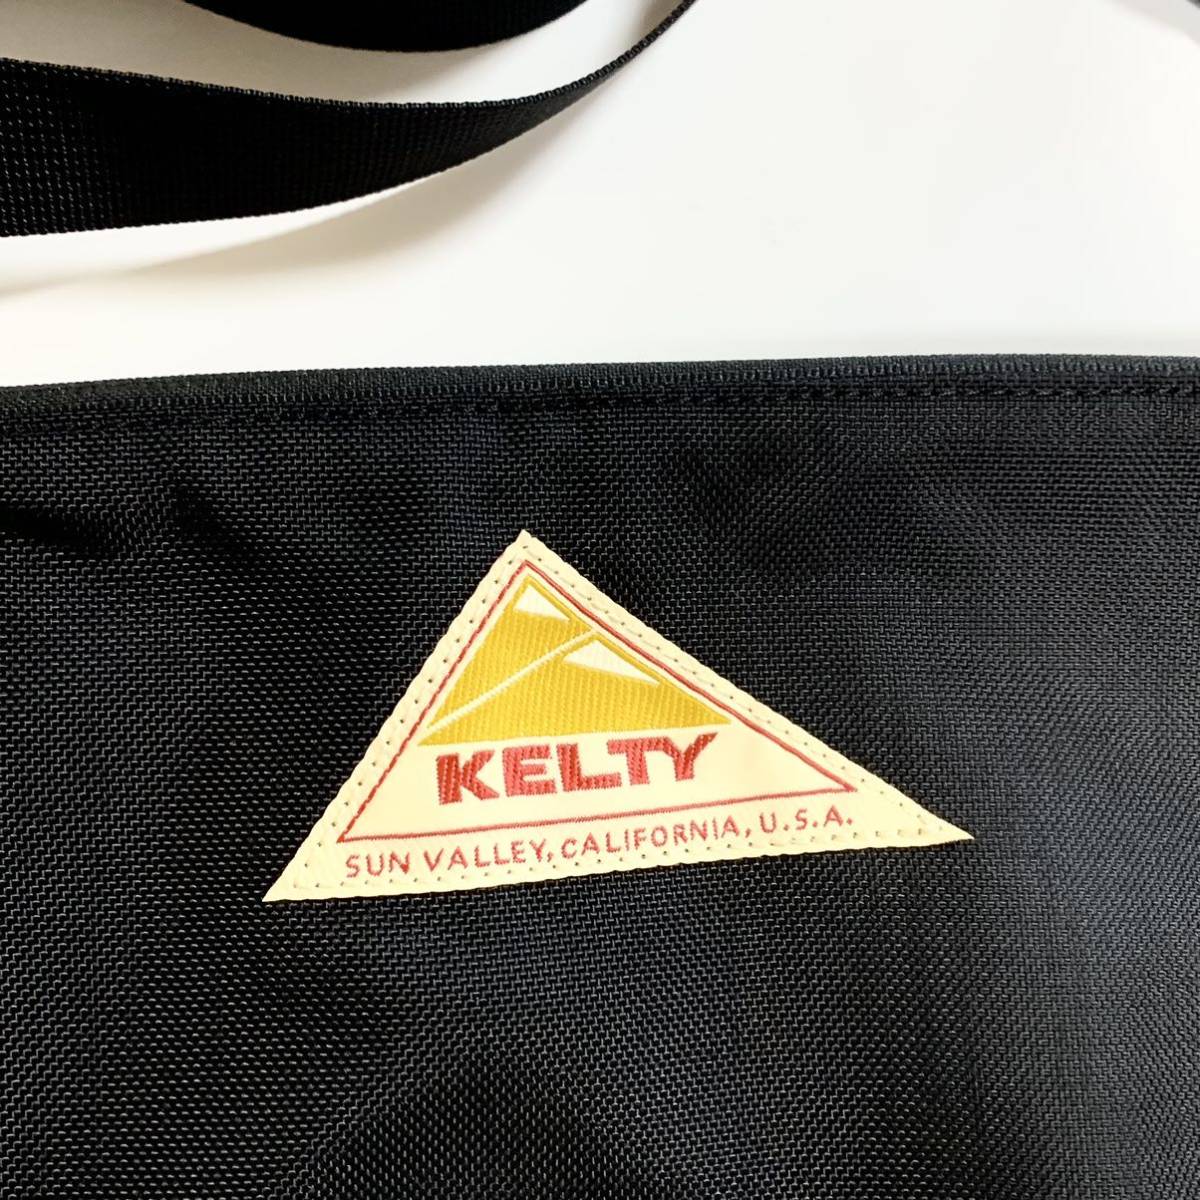 ケルティ KELTY ショルダーバッグ サコッシュ ブラック 黒 ナイロン トライアングル型 新品未使用品 送料無料